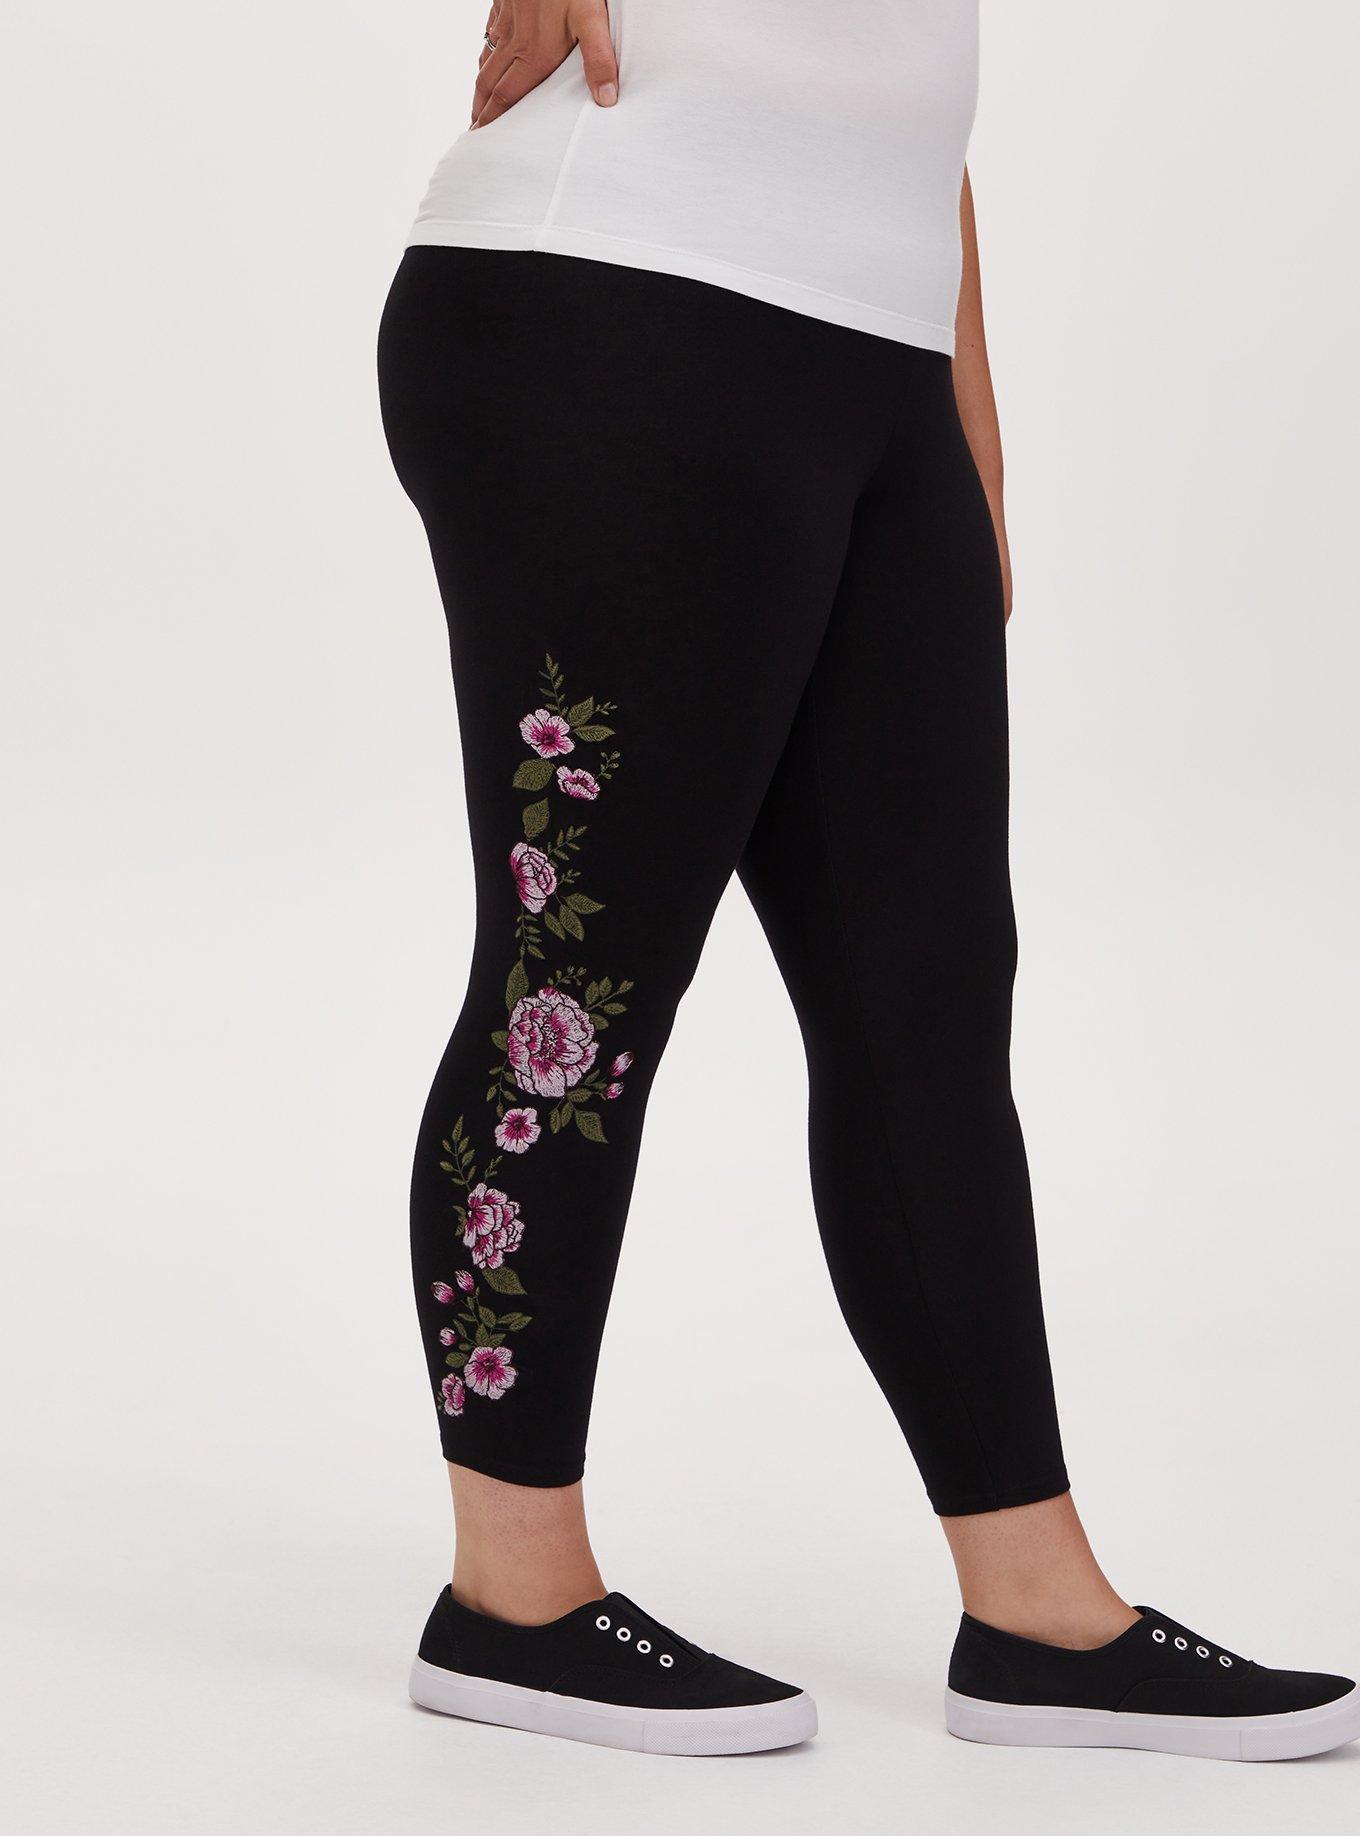 Plus Size - Premium Legging - Floral Black - Torrid